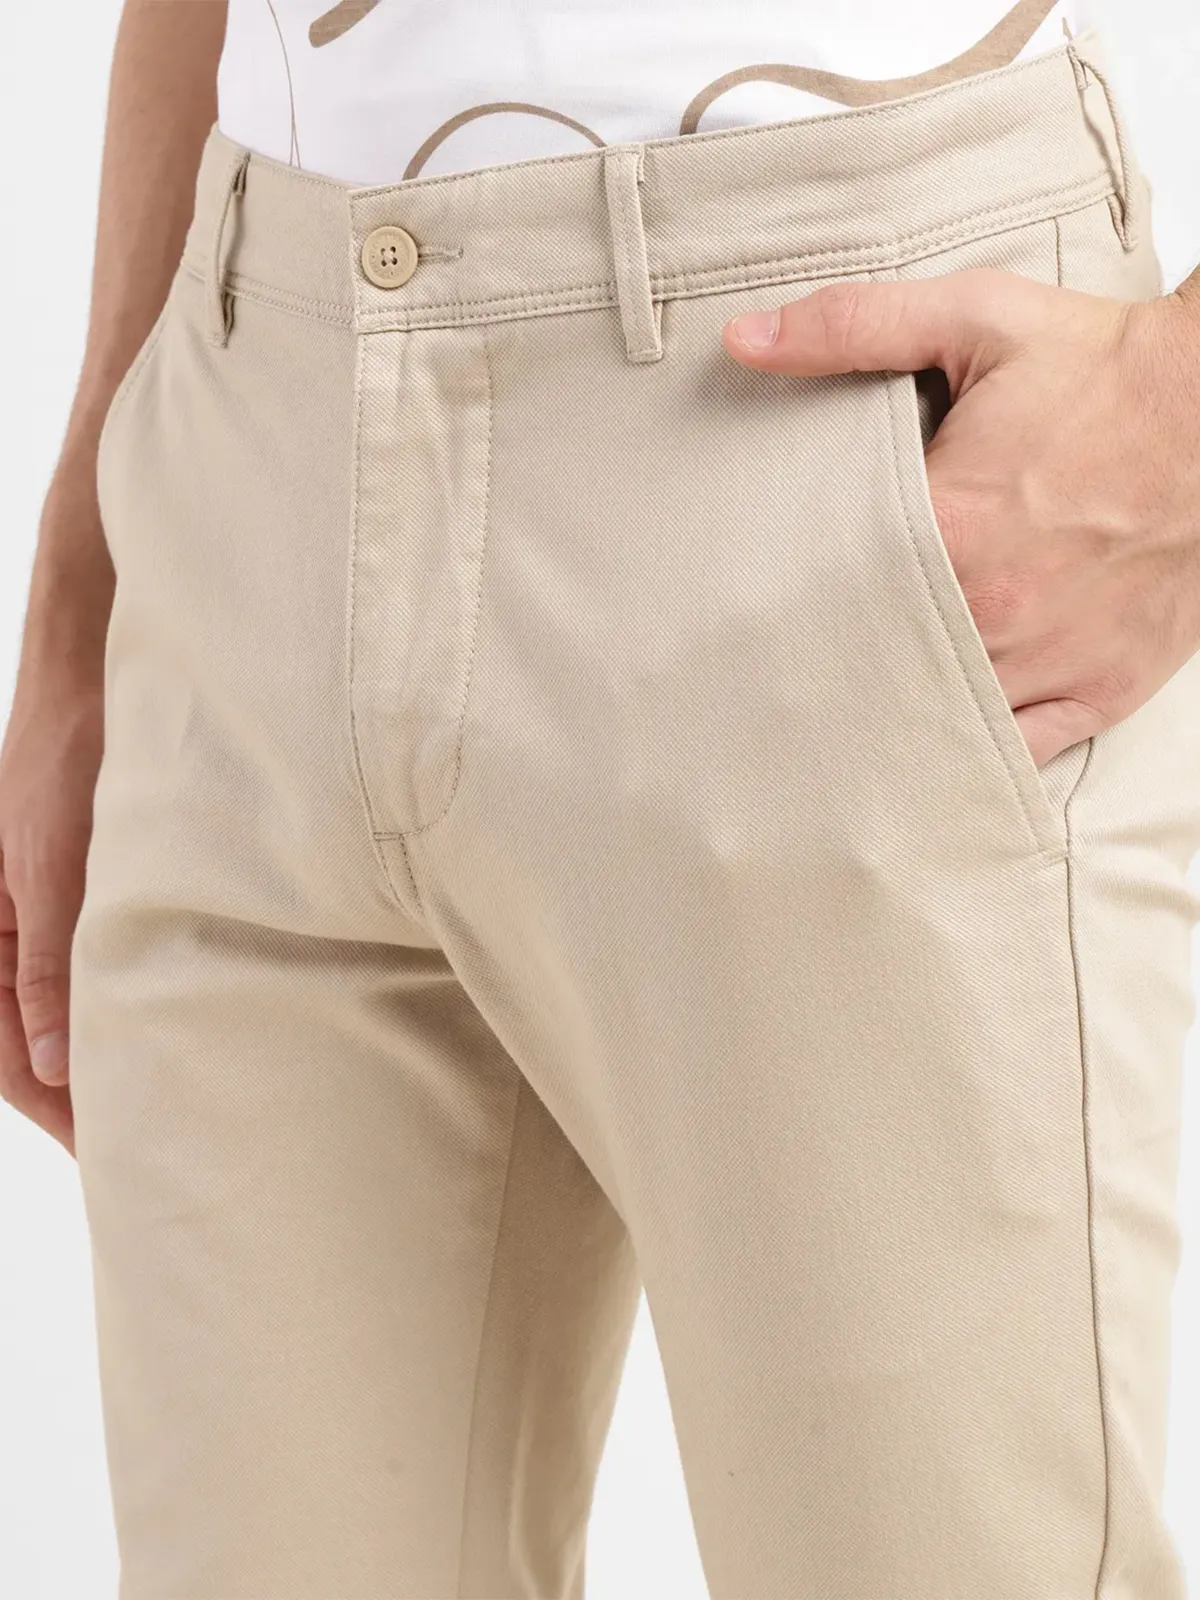 LEVIS beige 511 slim fit cotton trouser